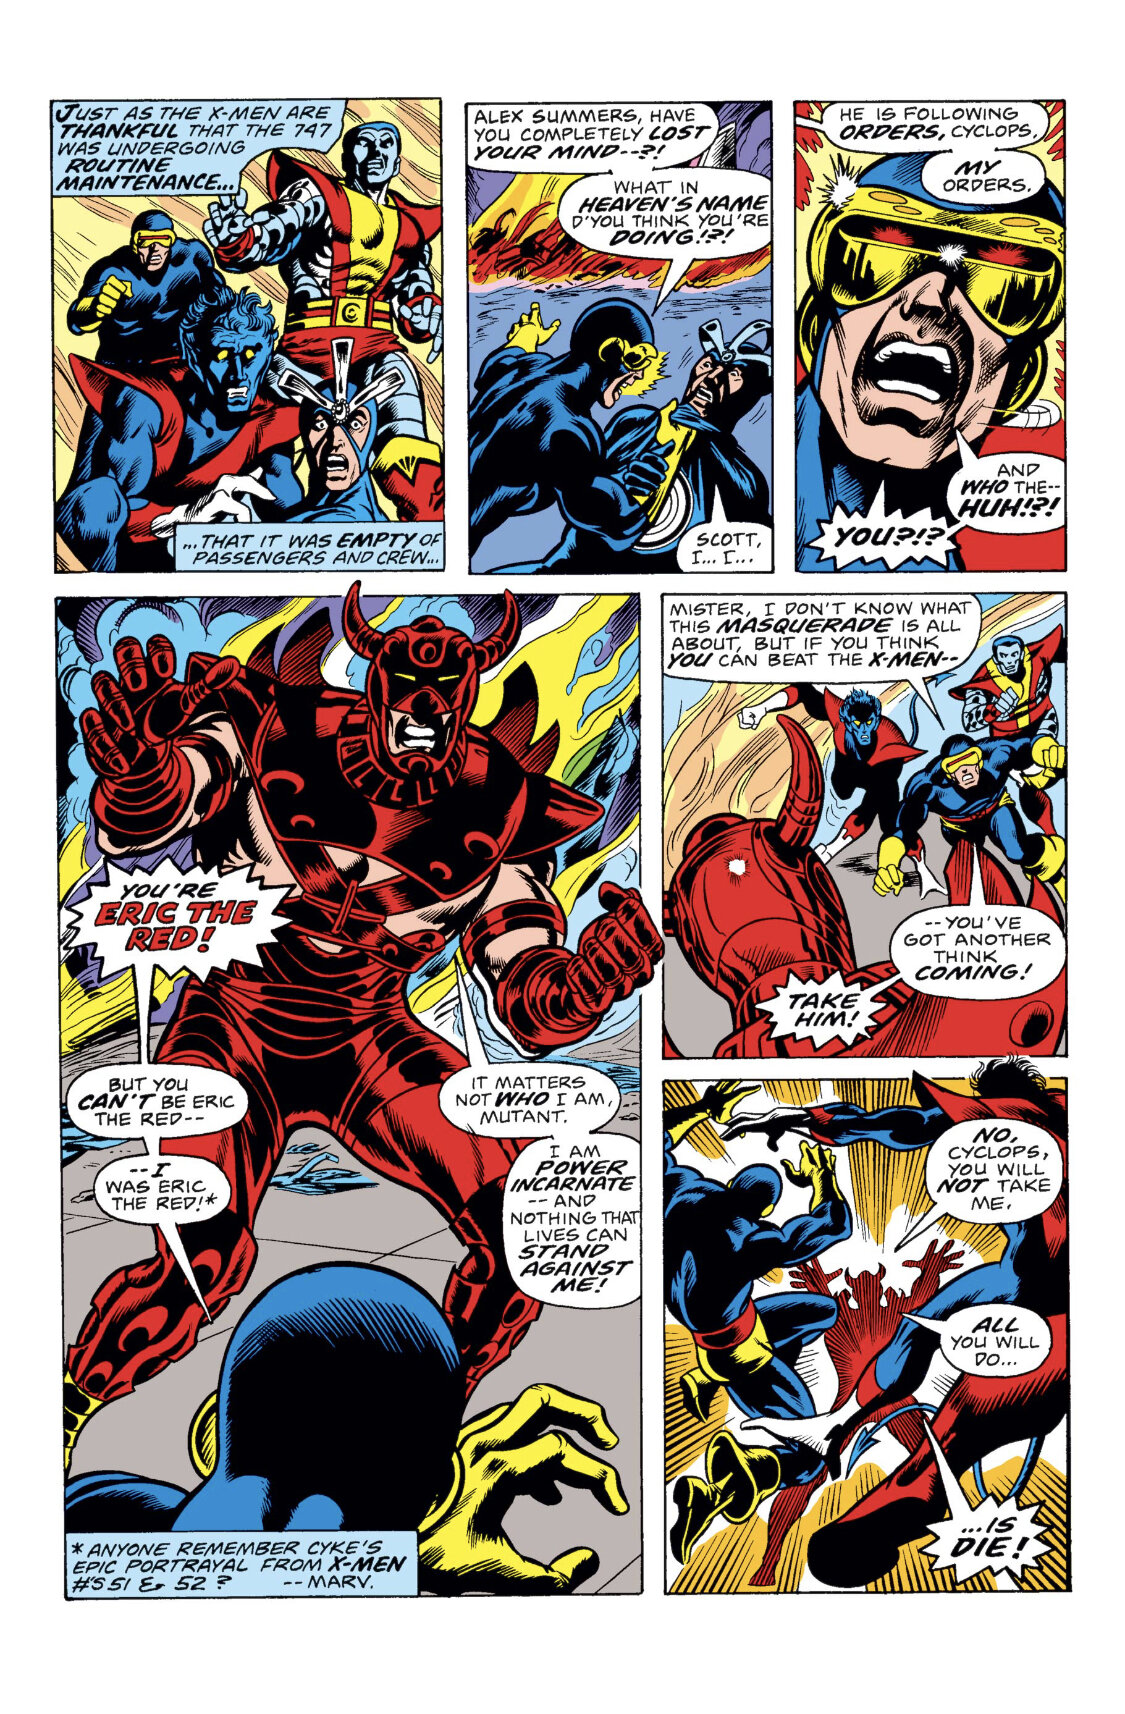 History of X - How Am I Not Myself? - Uncanny X-Men Omnibus Vol. 2